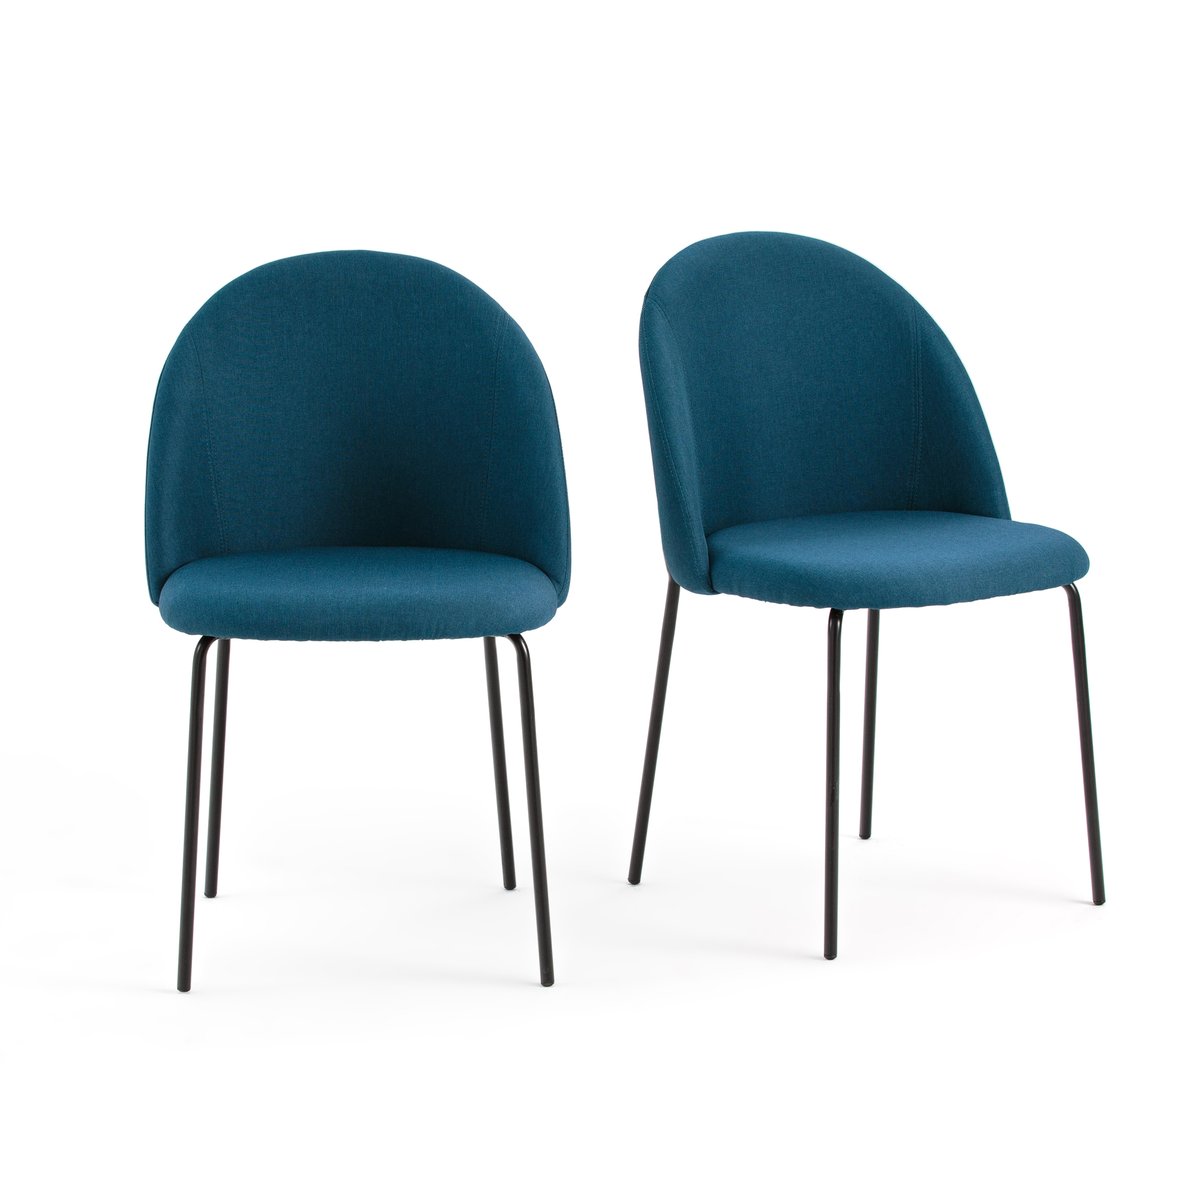 Комплект из 2 стульев NORDIE La Redoute единый размер синий комплект из 2 стульев galb la redoute комплект из 2 бежевый